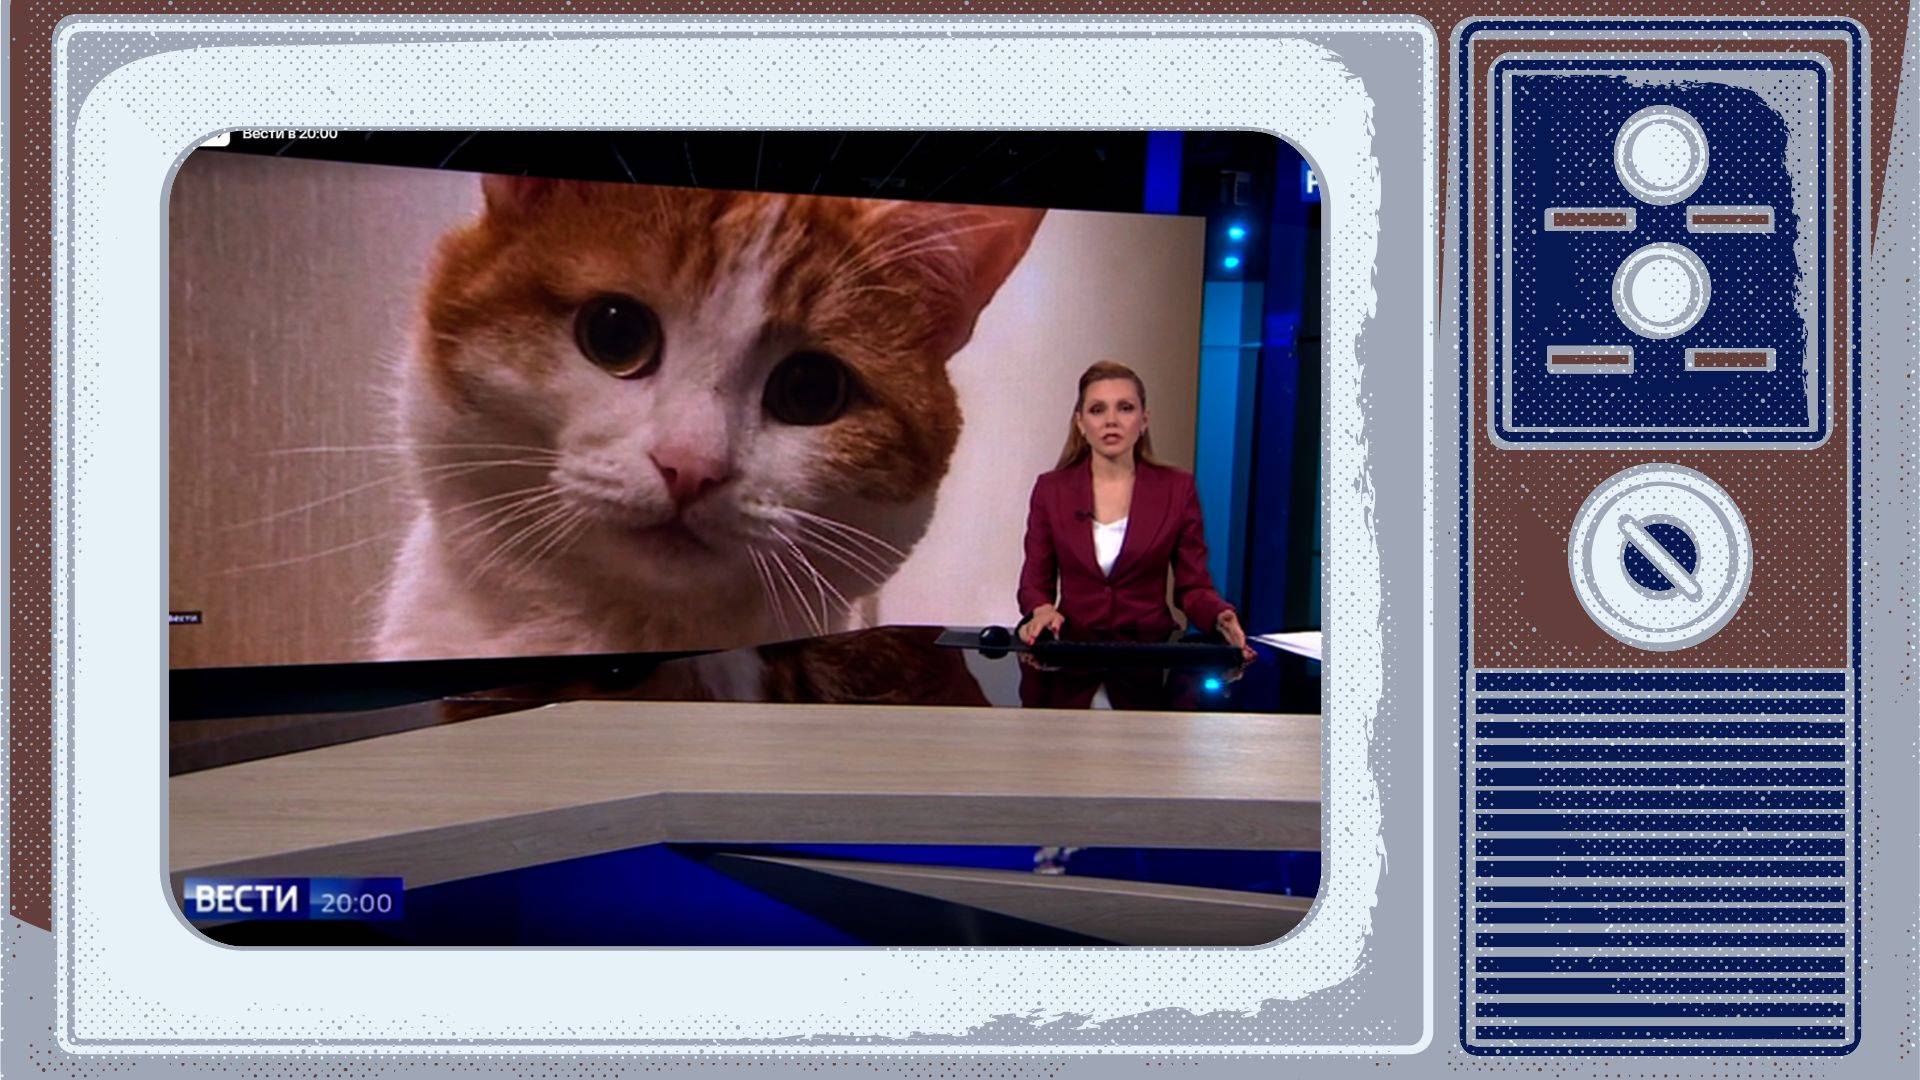 Grafika. W tamce starego telewizora screen z telewizyjnego stuia: prowadząca pokazuje wielkie zdjęcie rudego kota o wielkich oczach